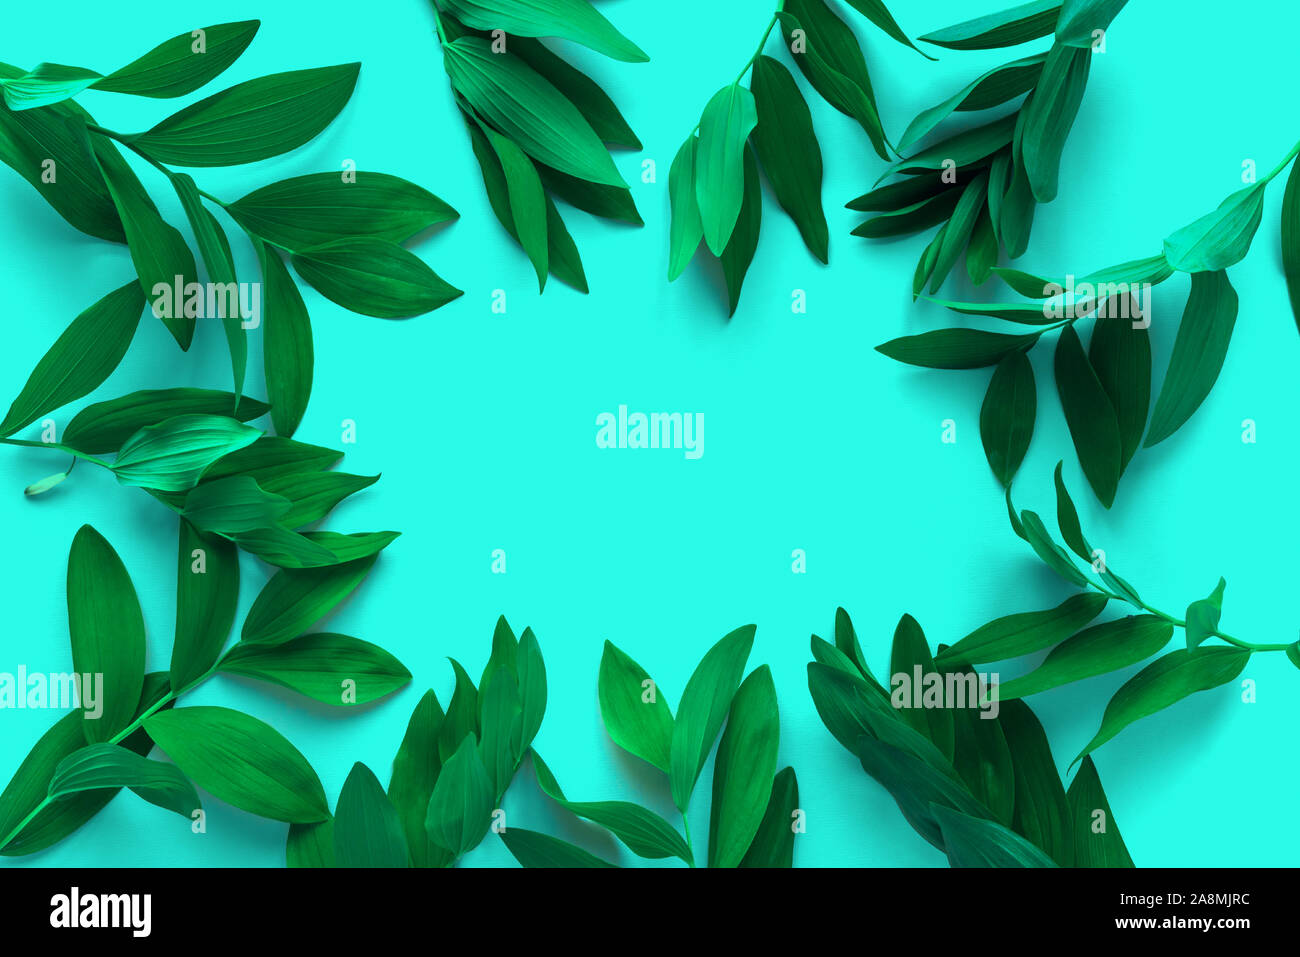 Mise en page créative de feuilles vertes, plantes sauvages exotiques sur turquoise très tendance, vue du dessus, copiez l'espace. L'été, le printemps ou l'écologie concept. Banque D'Images